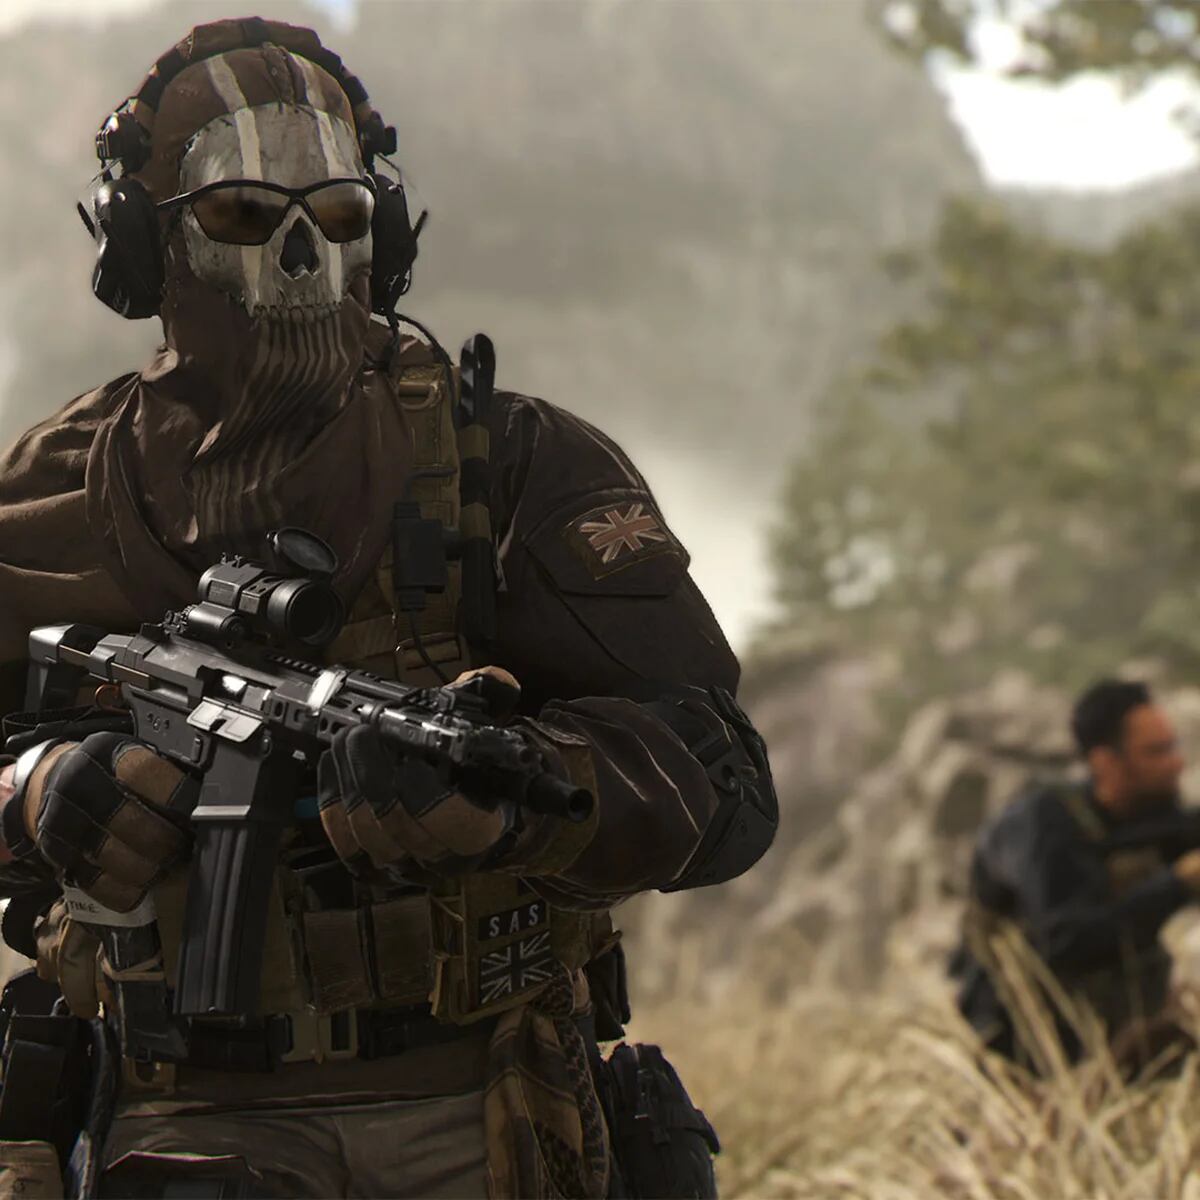 Xbox asegura que Call Of Duty seguirá en PlayStation mientras